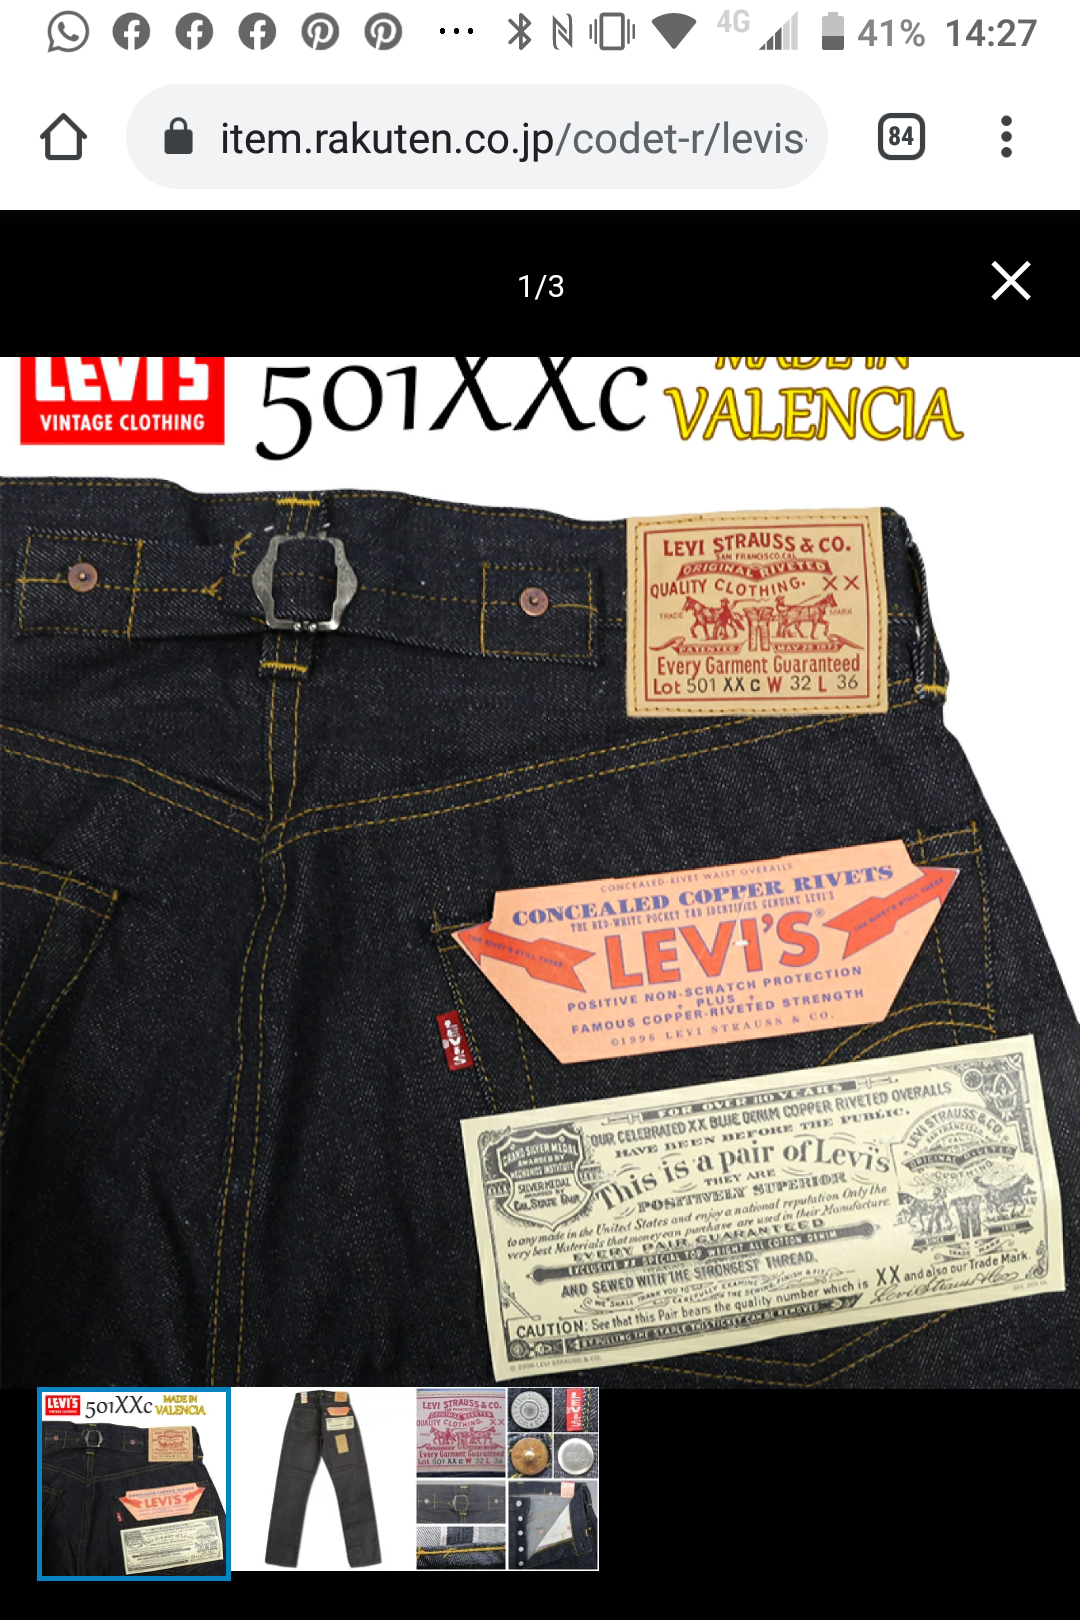 Levis Vintage Clothing (LVC) - denimbro - Page 78